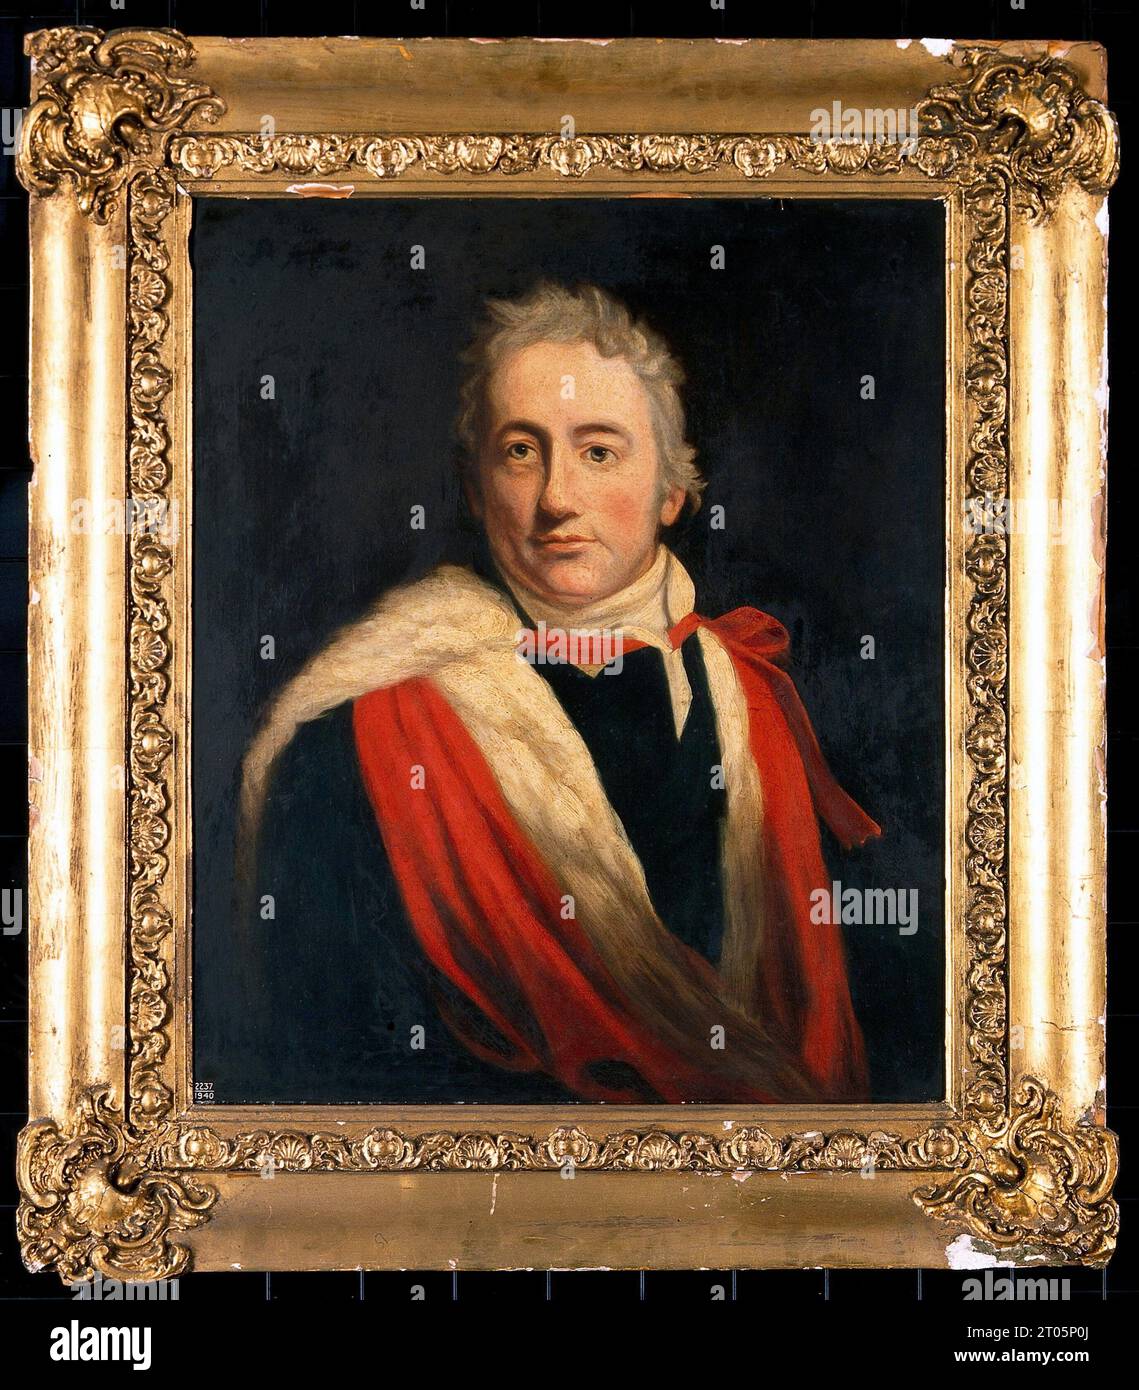 Sir Humphry Davy, 1778 - 1829, était un chimiste et inventeur britannique qui a inventé la lampe Davy, peinture à l'huile Banque D'Images